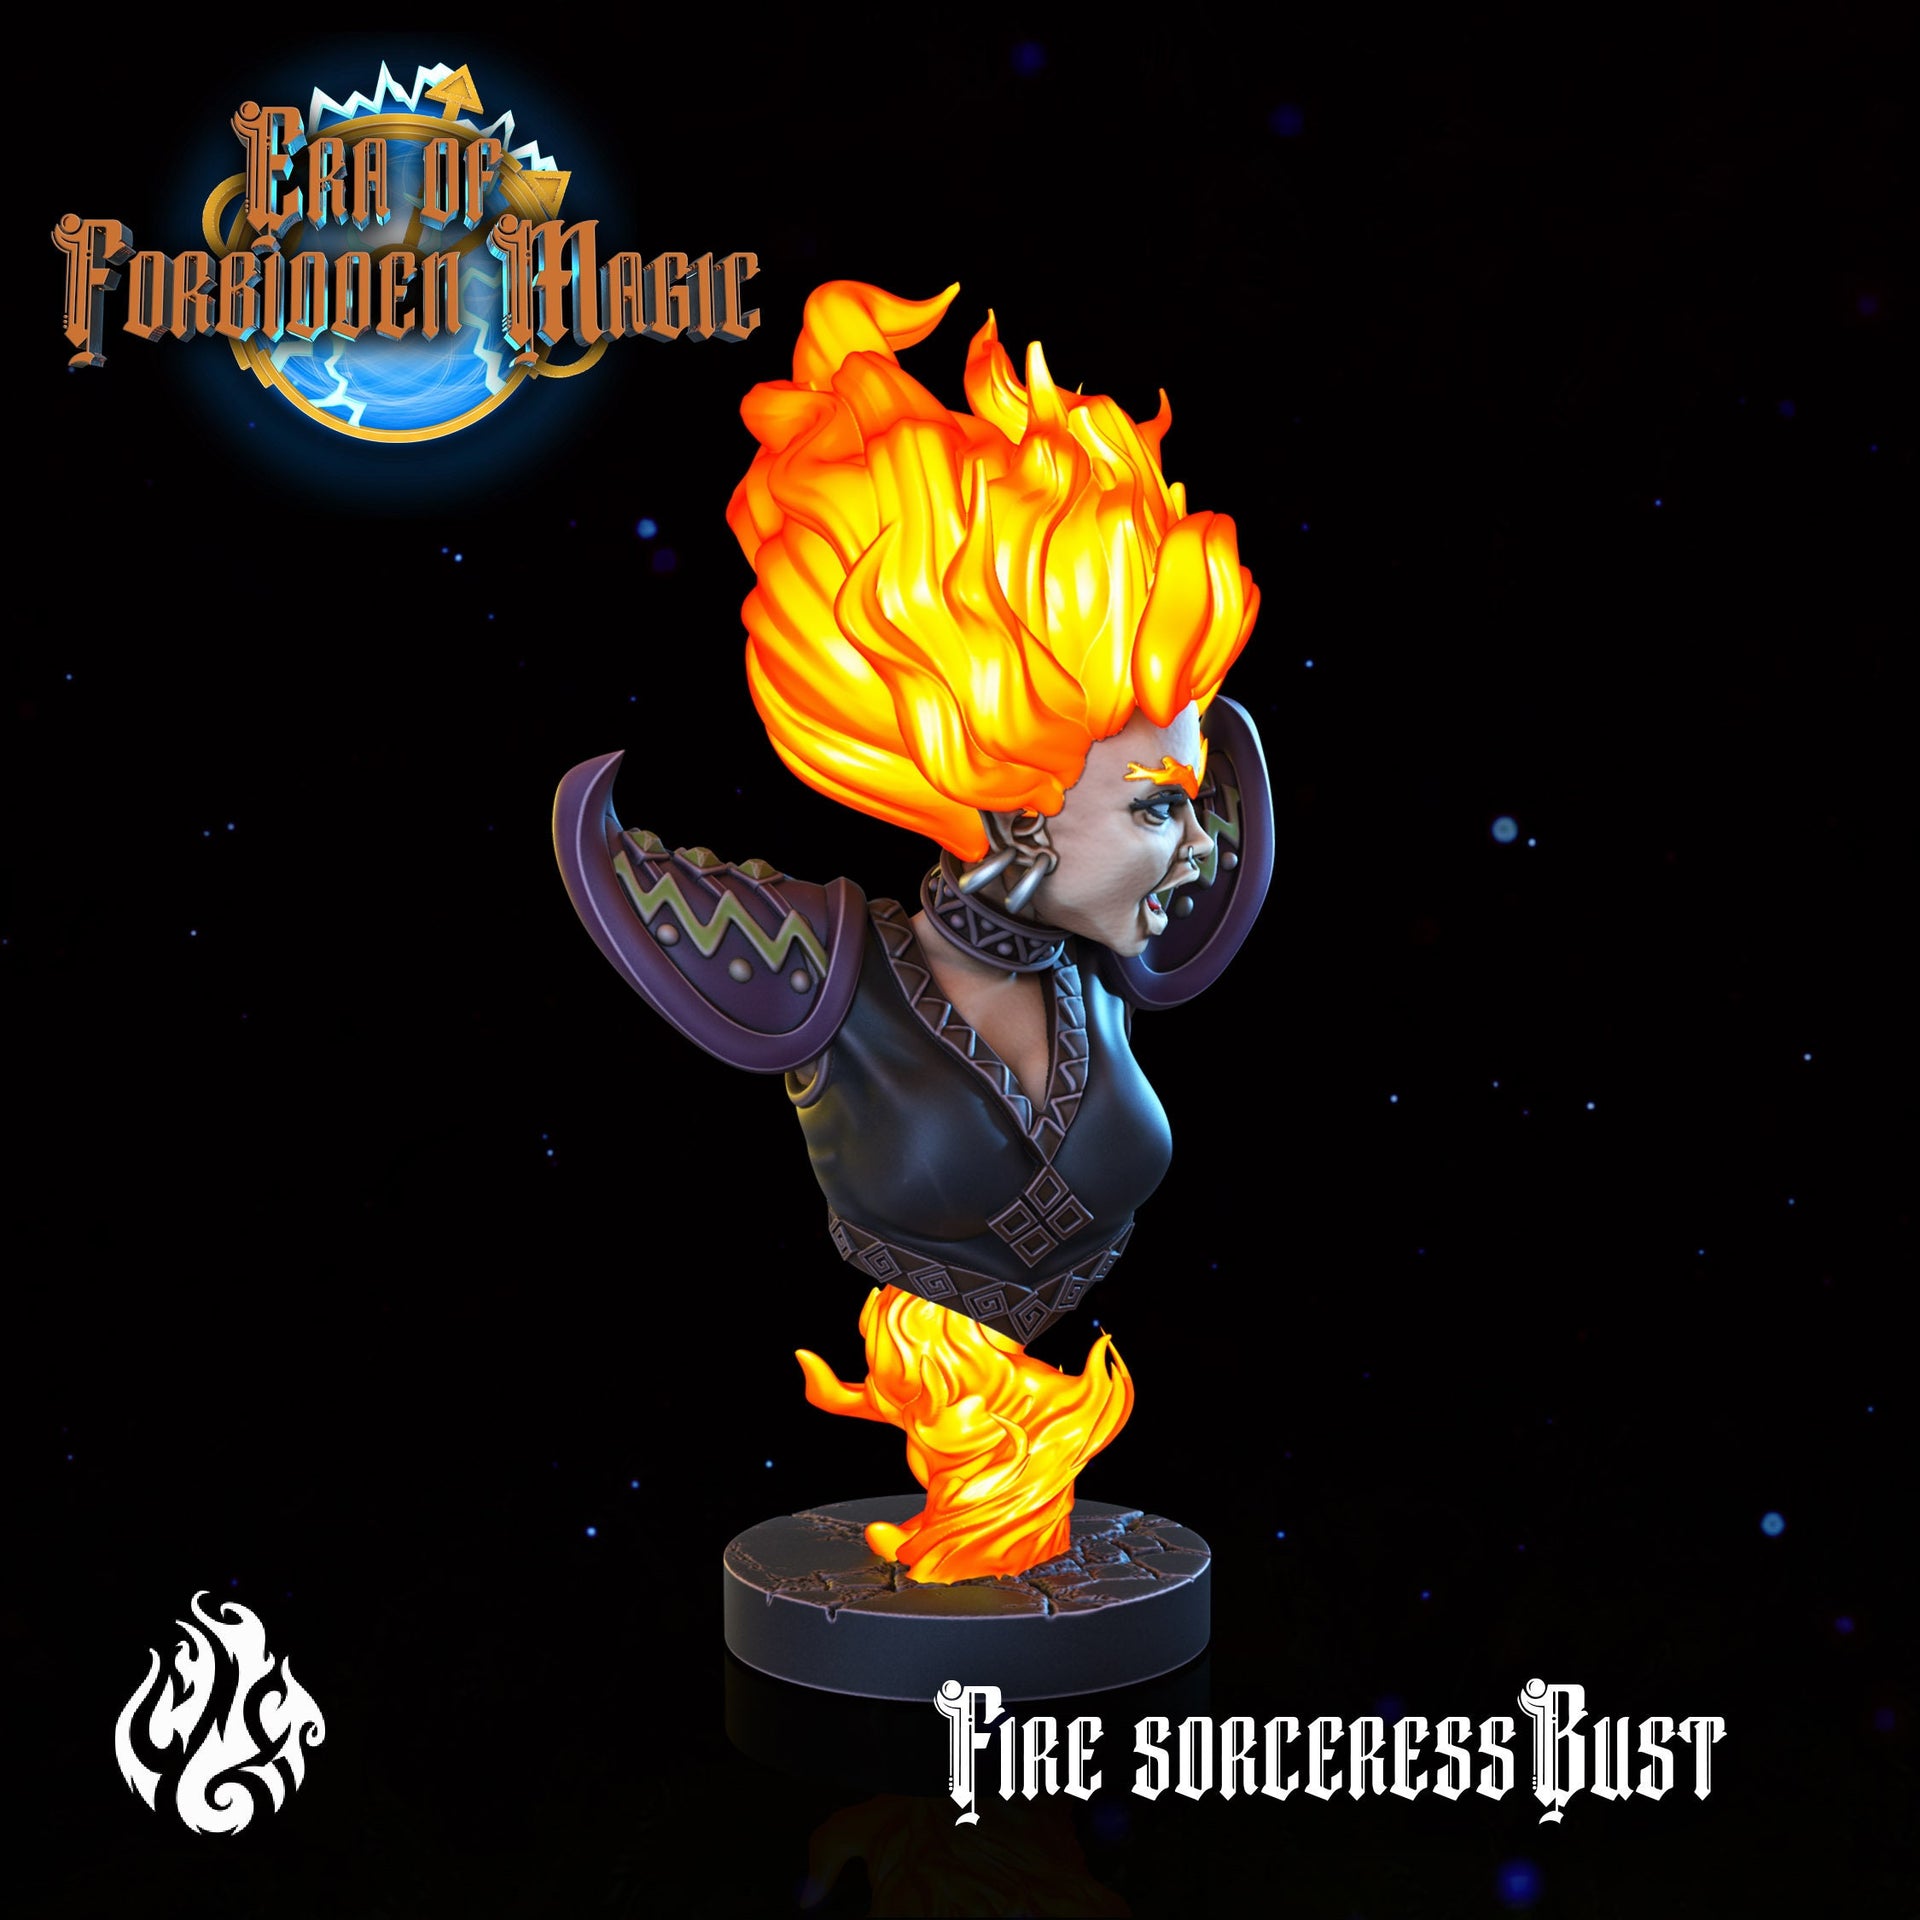 Fire Sorceress Bust - Crippled God Foundry - Era of Forbidden Magic